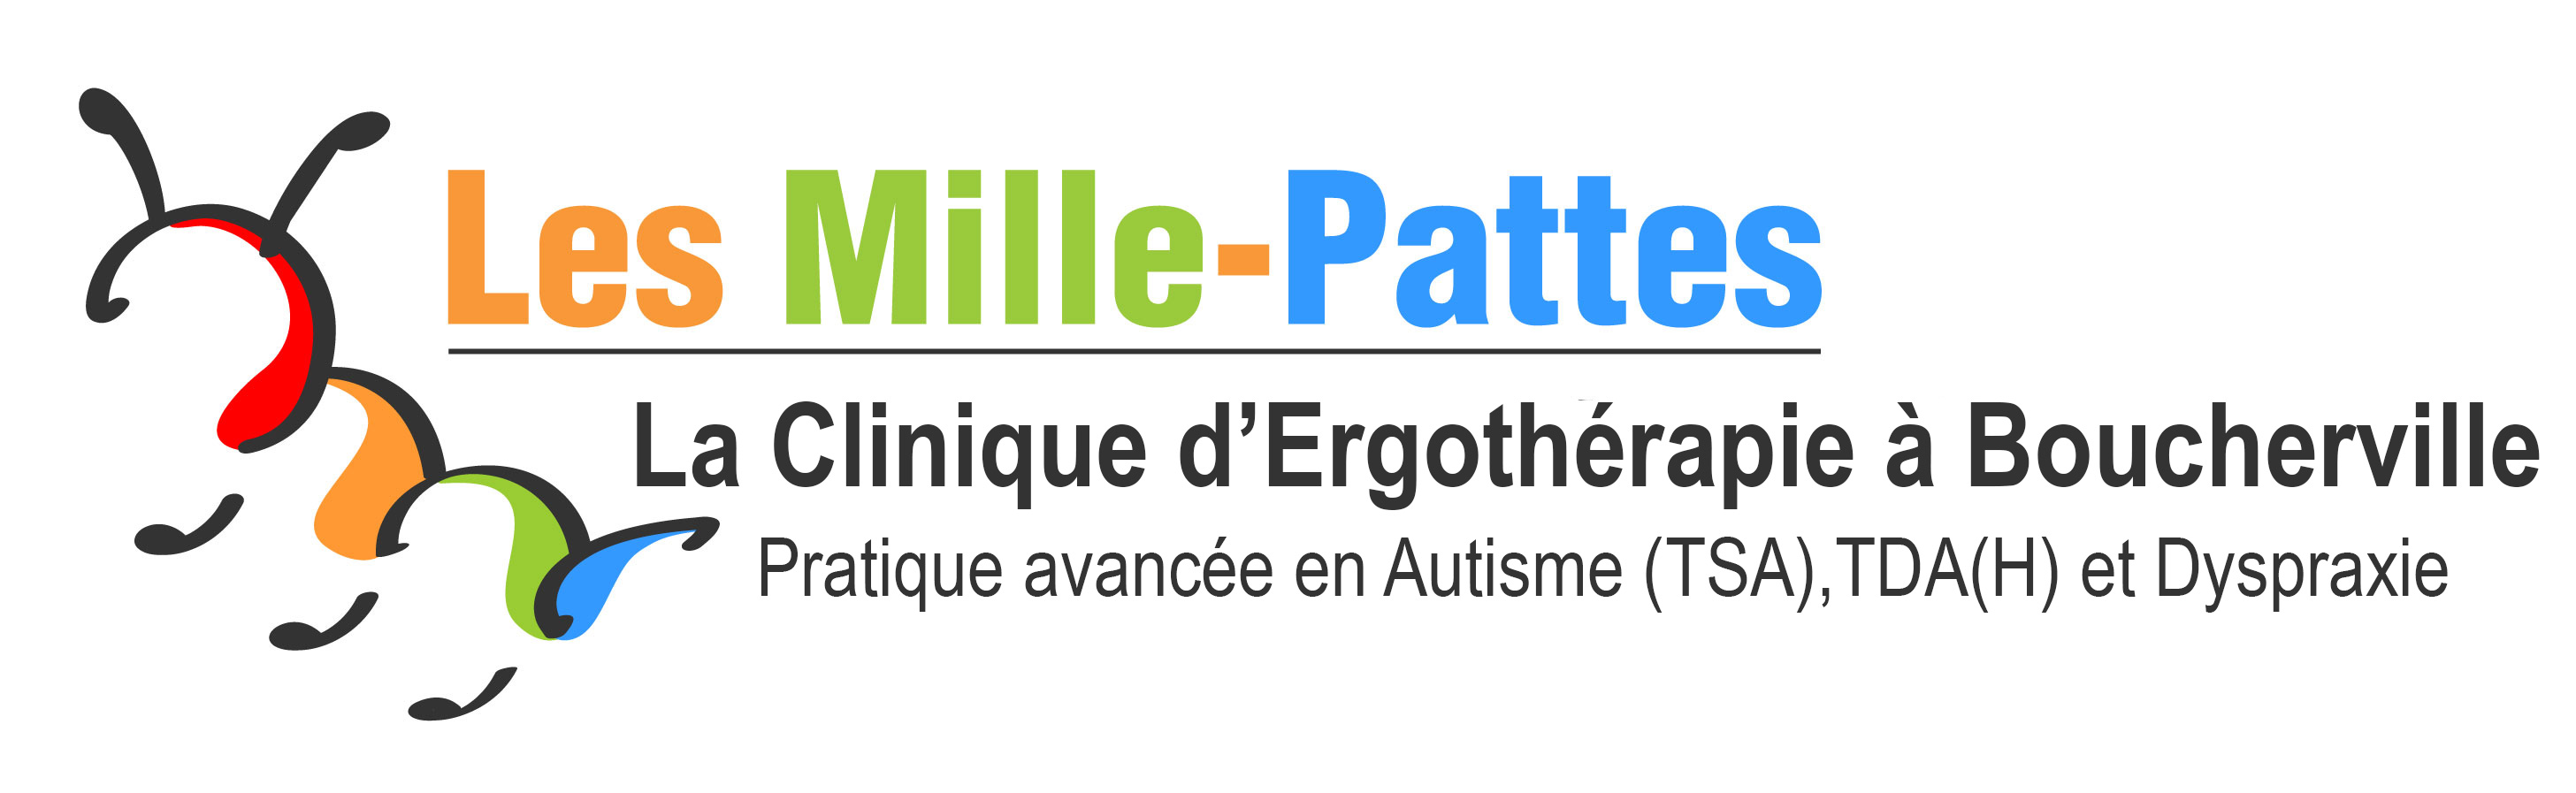 Les_Mille-Pattes_autisme_Demande_de_Service_en_ligne